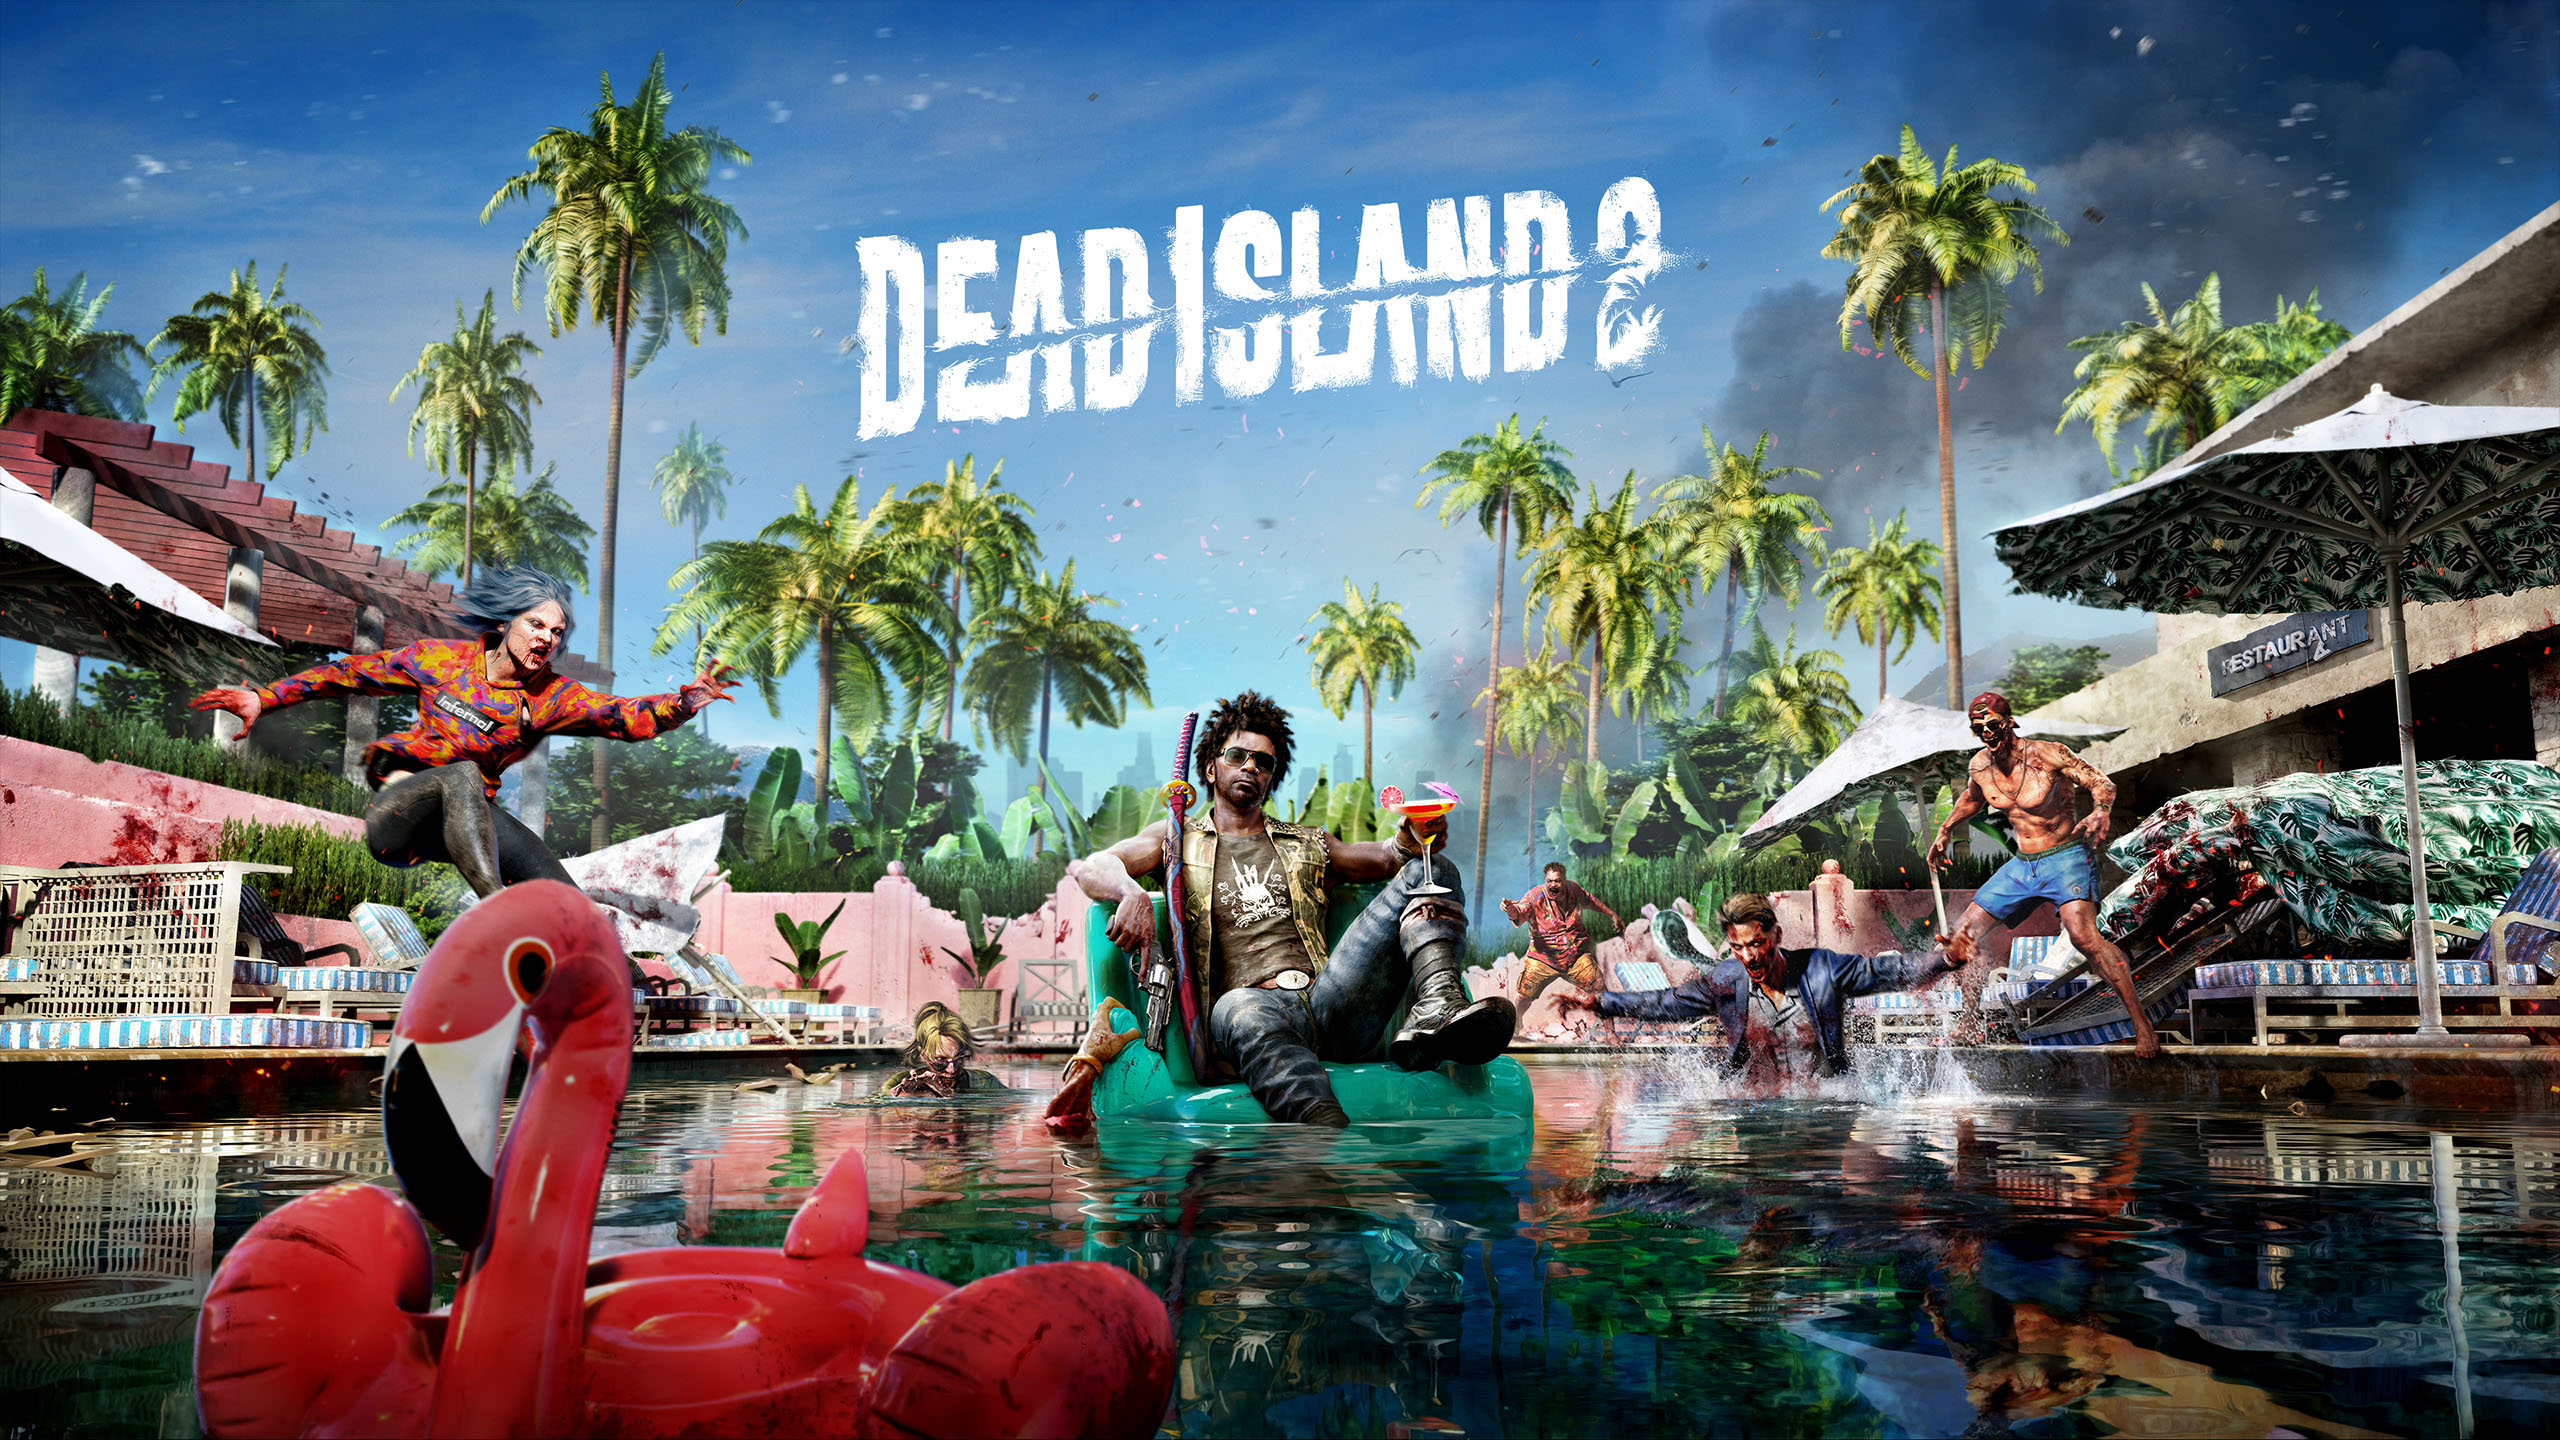 Кількість проданих копій Dead Island 2 за три дні перетнула позначку в 1 млн